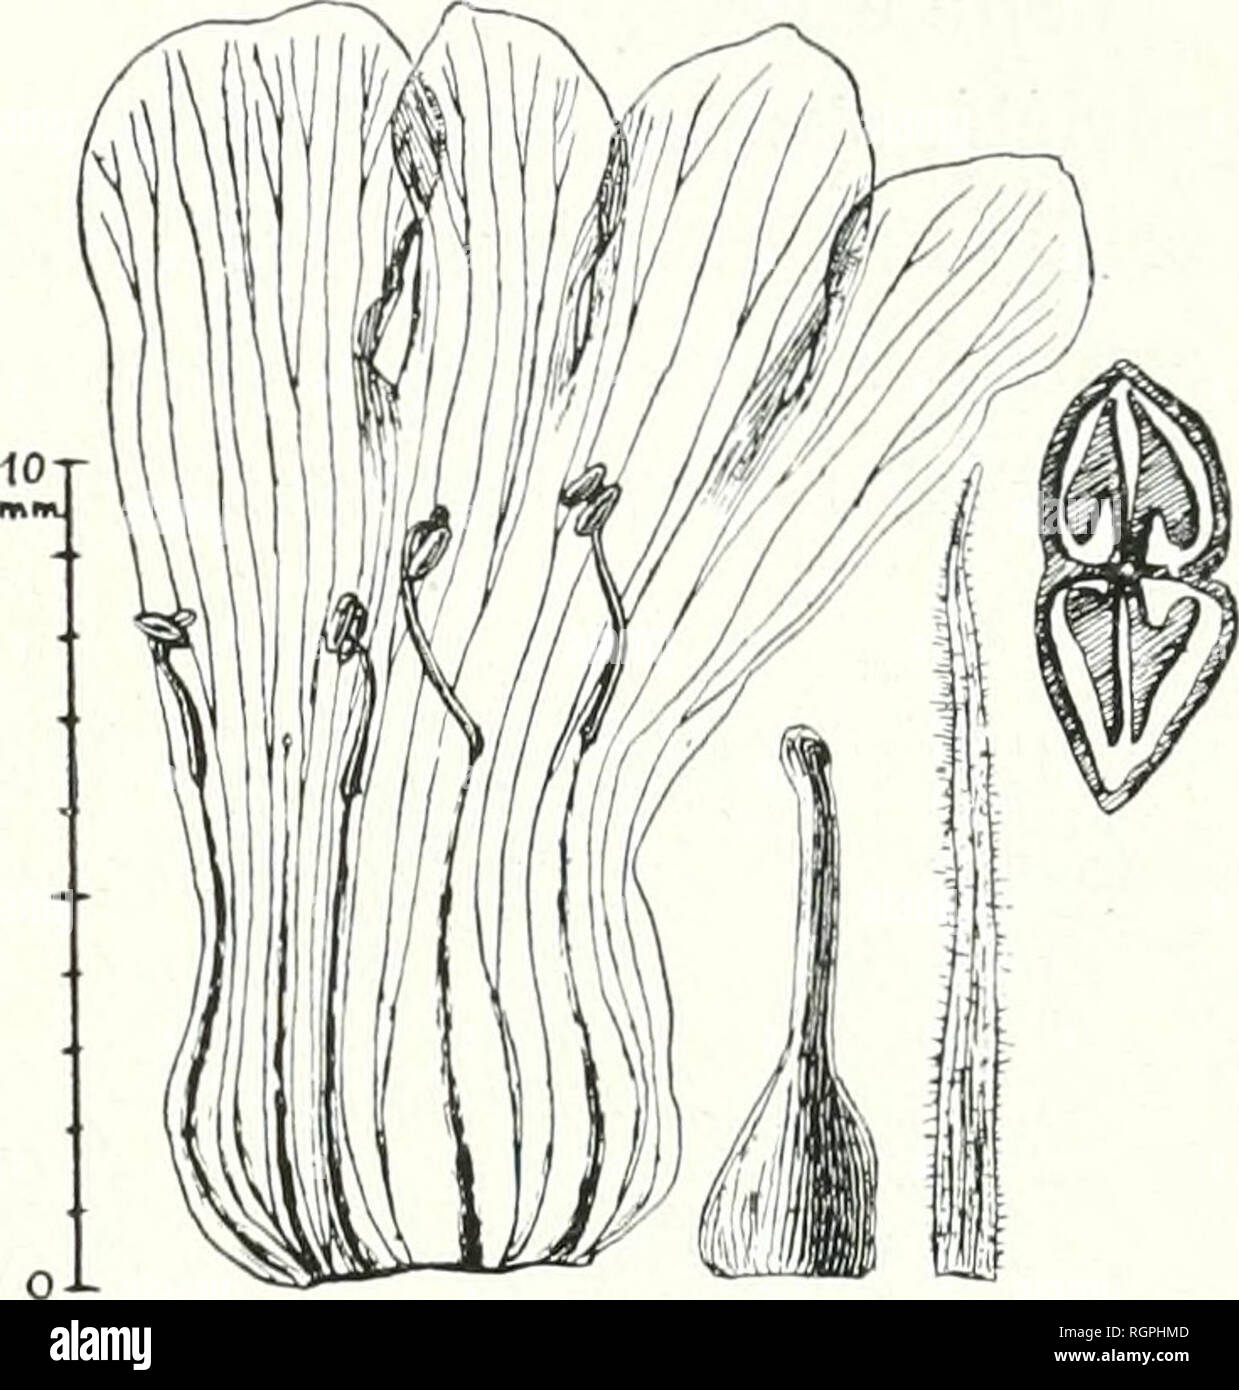 . Bulletin de la Socit botanique de Genve. Plants; Plants -- Switzerland. '.:&gt; M. .MI.MilÂ». CONTfUBUTlOJN A LÃTUDE M' GENRE STEMODIA 199 Stemodia Ciiodati * Minod, n. sp. Radix... Caulis erectus, longitrorsum sliÃ¯alus, pubescens, 3-4 mm. crassus. Folia Lisque ad 6 V? cm. Iqnga, 2 cm. lata, subsessilia, ternata, ovato-lanceolata, h;isi attenuata, pagina superiore bullulata, puberula pilis minimis, marginibus dentatis dentibus rotundatis vel ohtnsis, pagina infÃ¨iÃ¯ore subglabra. Florespedicellati, pedicello 15 mm. longo. Sepala 11 mm. longa, V2 1,im- 'al;i&gt; subulata. Corolla I&quot; mm. Stock Photo